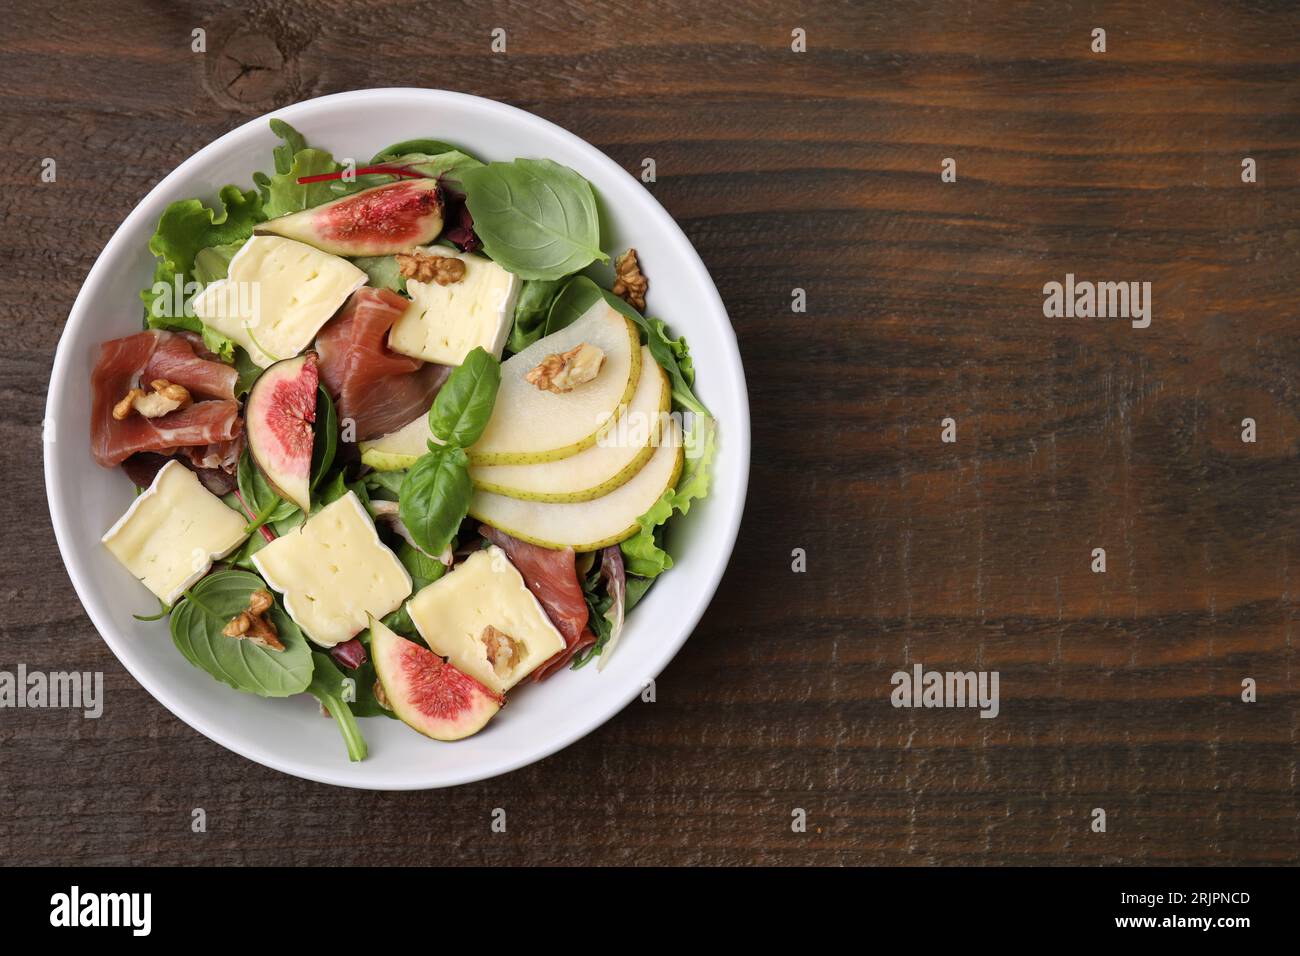 Salade savoureuse avec fromage brie, prosciutto, poire et figues sur table en bois, vue de dessus. Espace pour le texte Banque D'Images